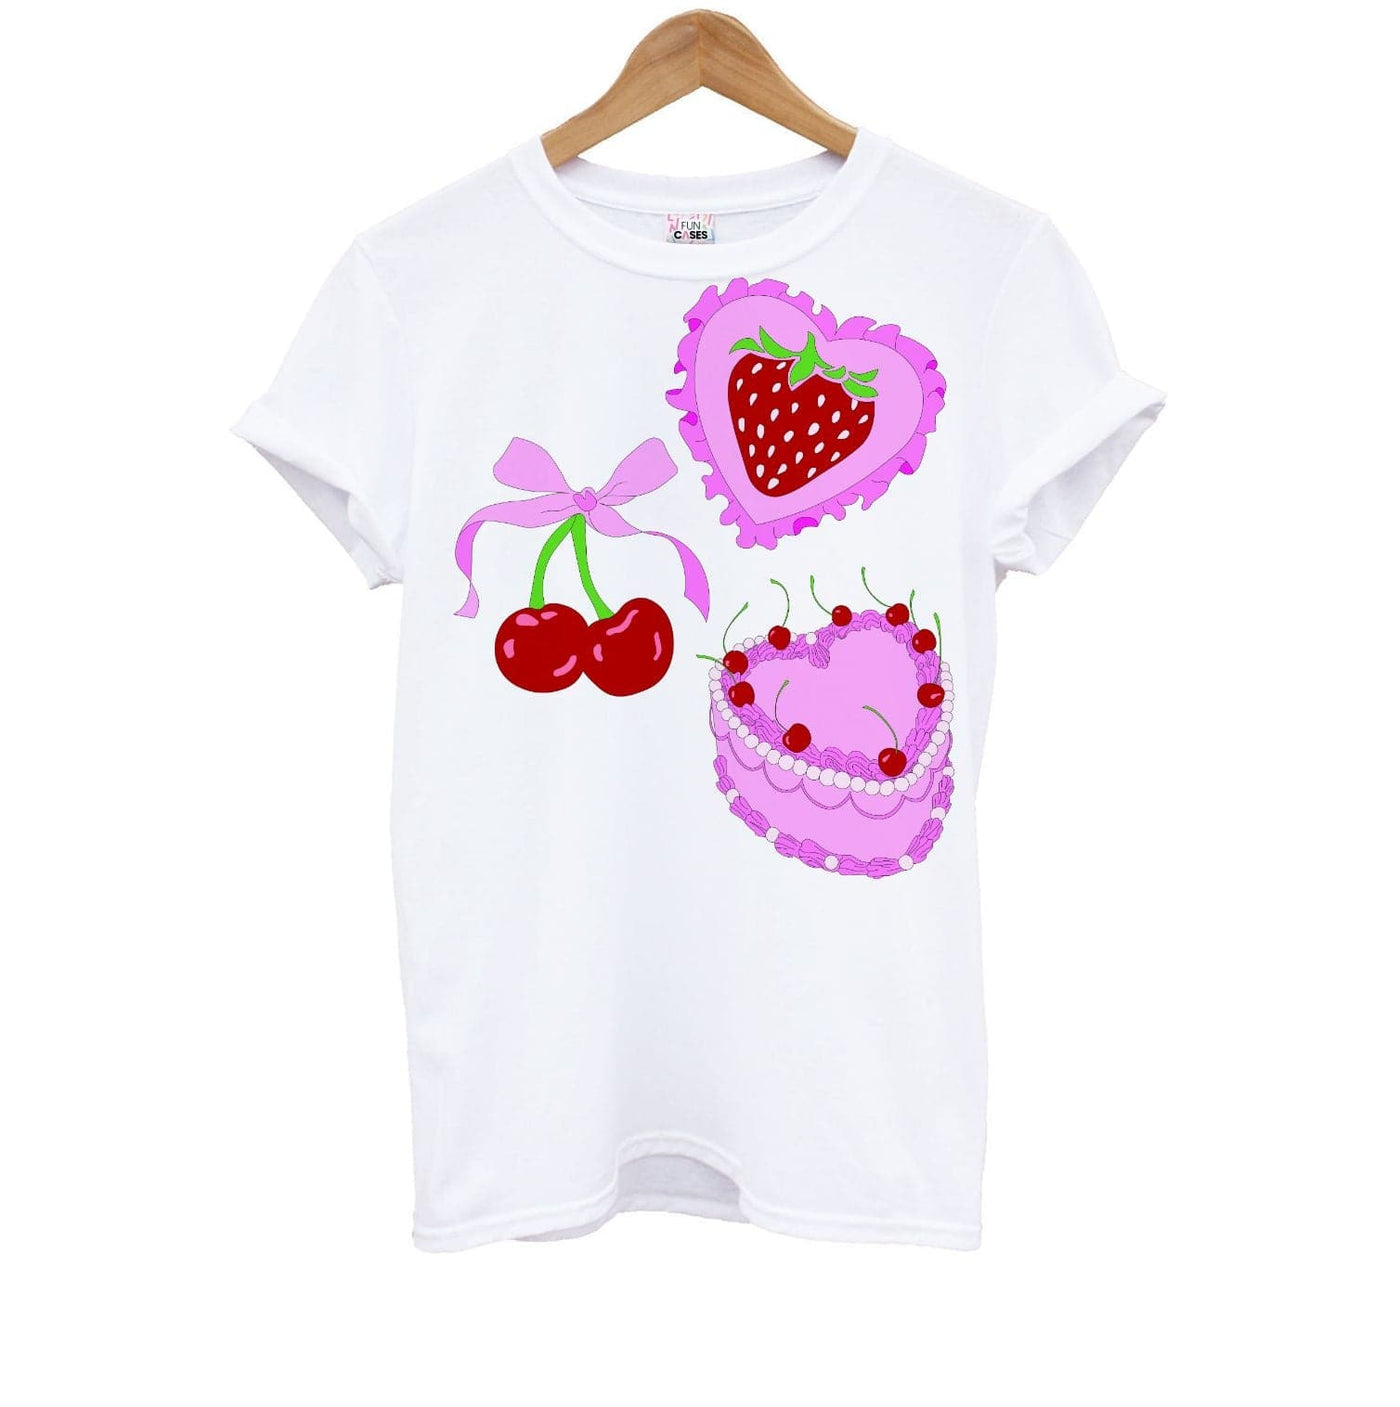 Cherries, Strawberries And Cake - Valentine's Day Kids T-Shirt